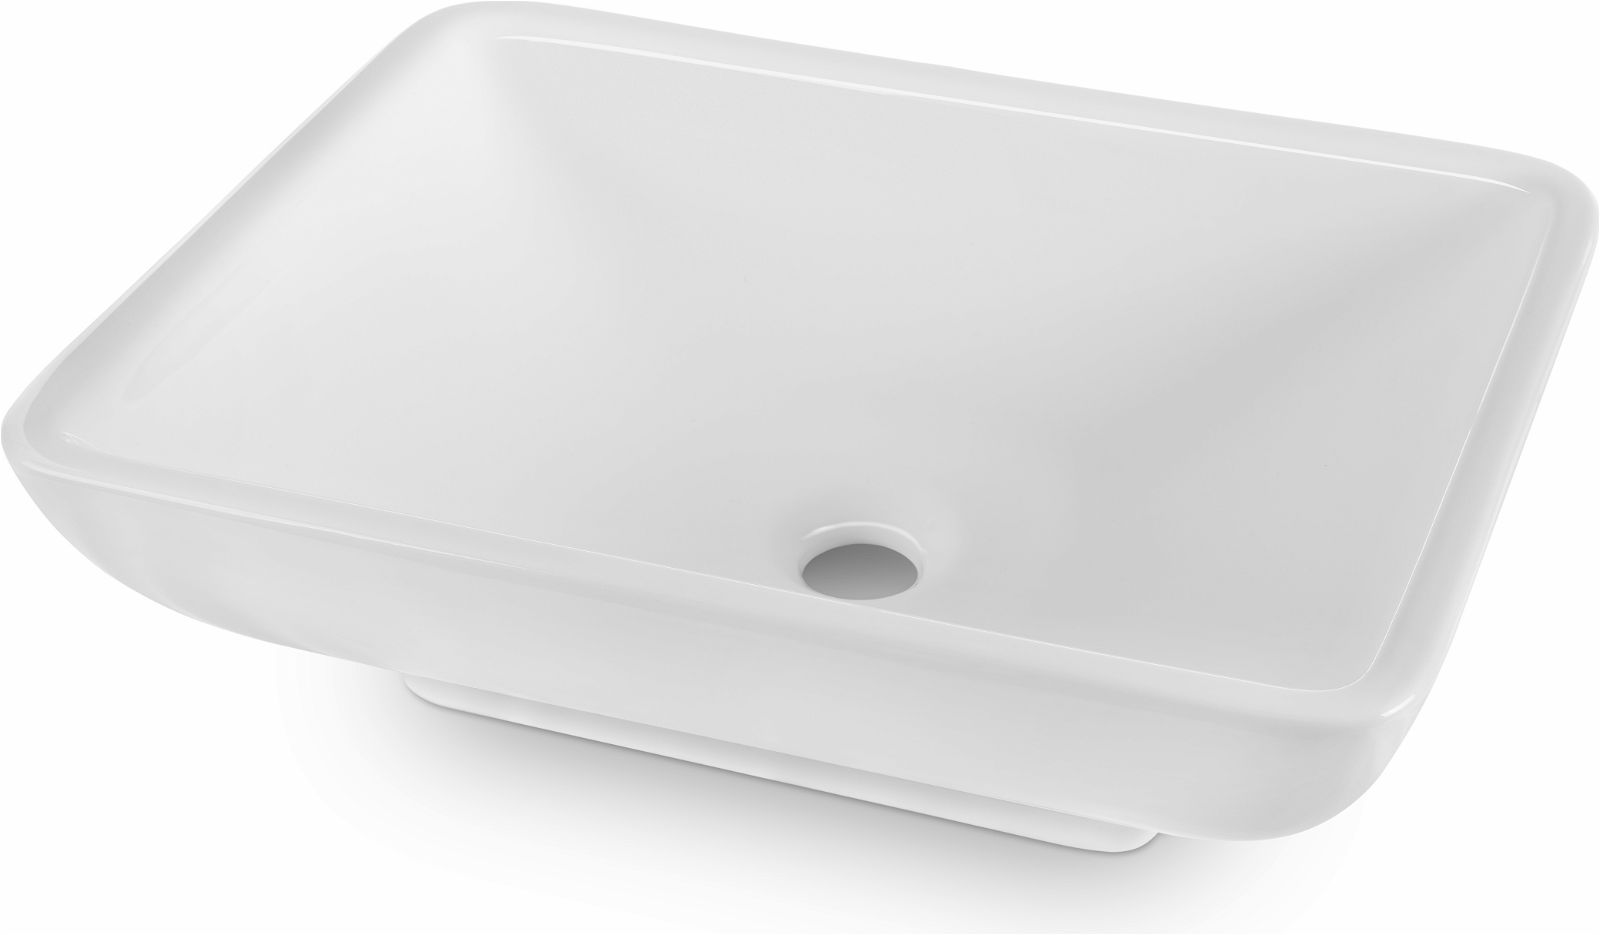 Ceramic washbasin, countertop - CDG_6U5S - Główne zdjęcie produktowe